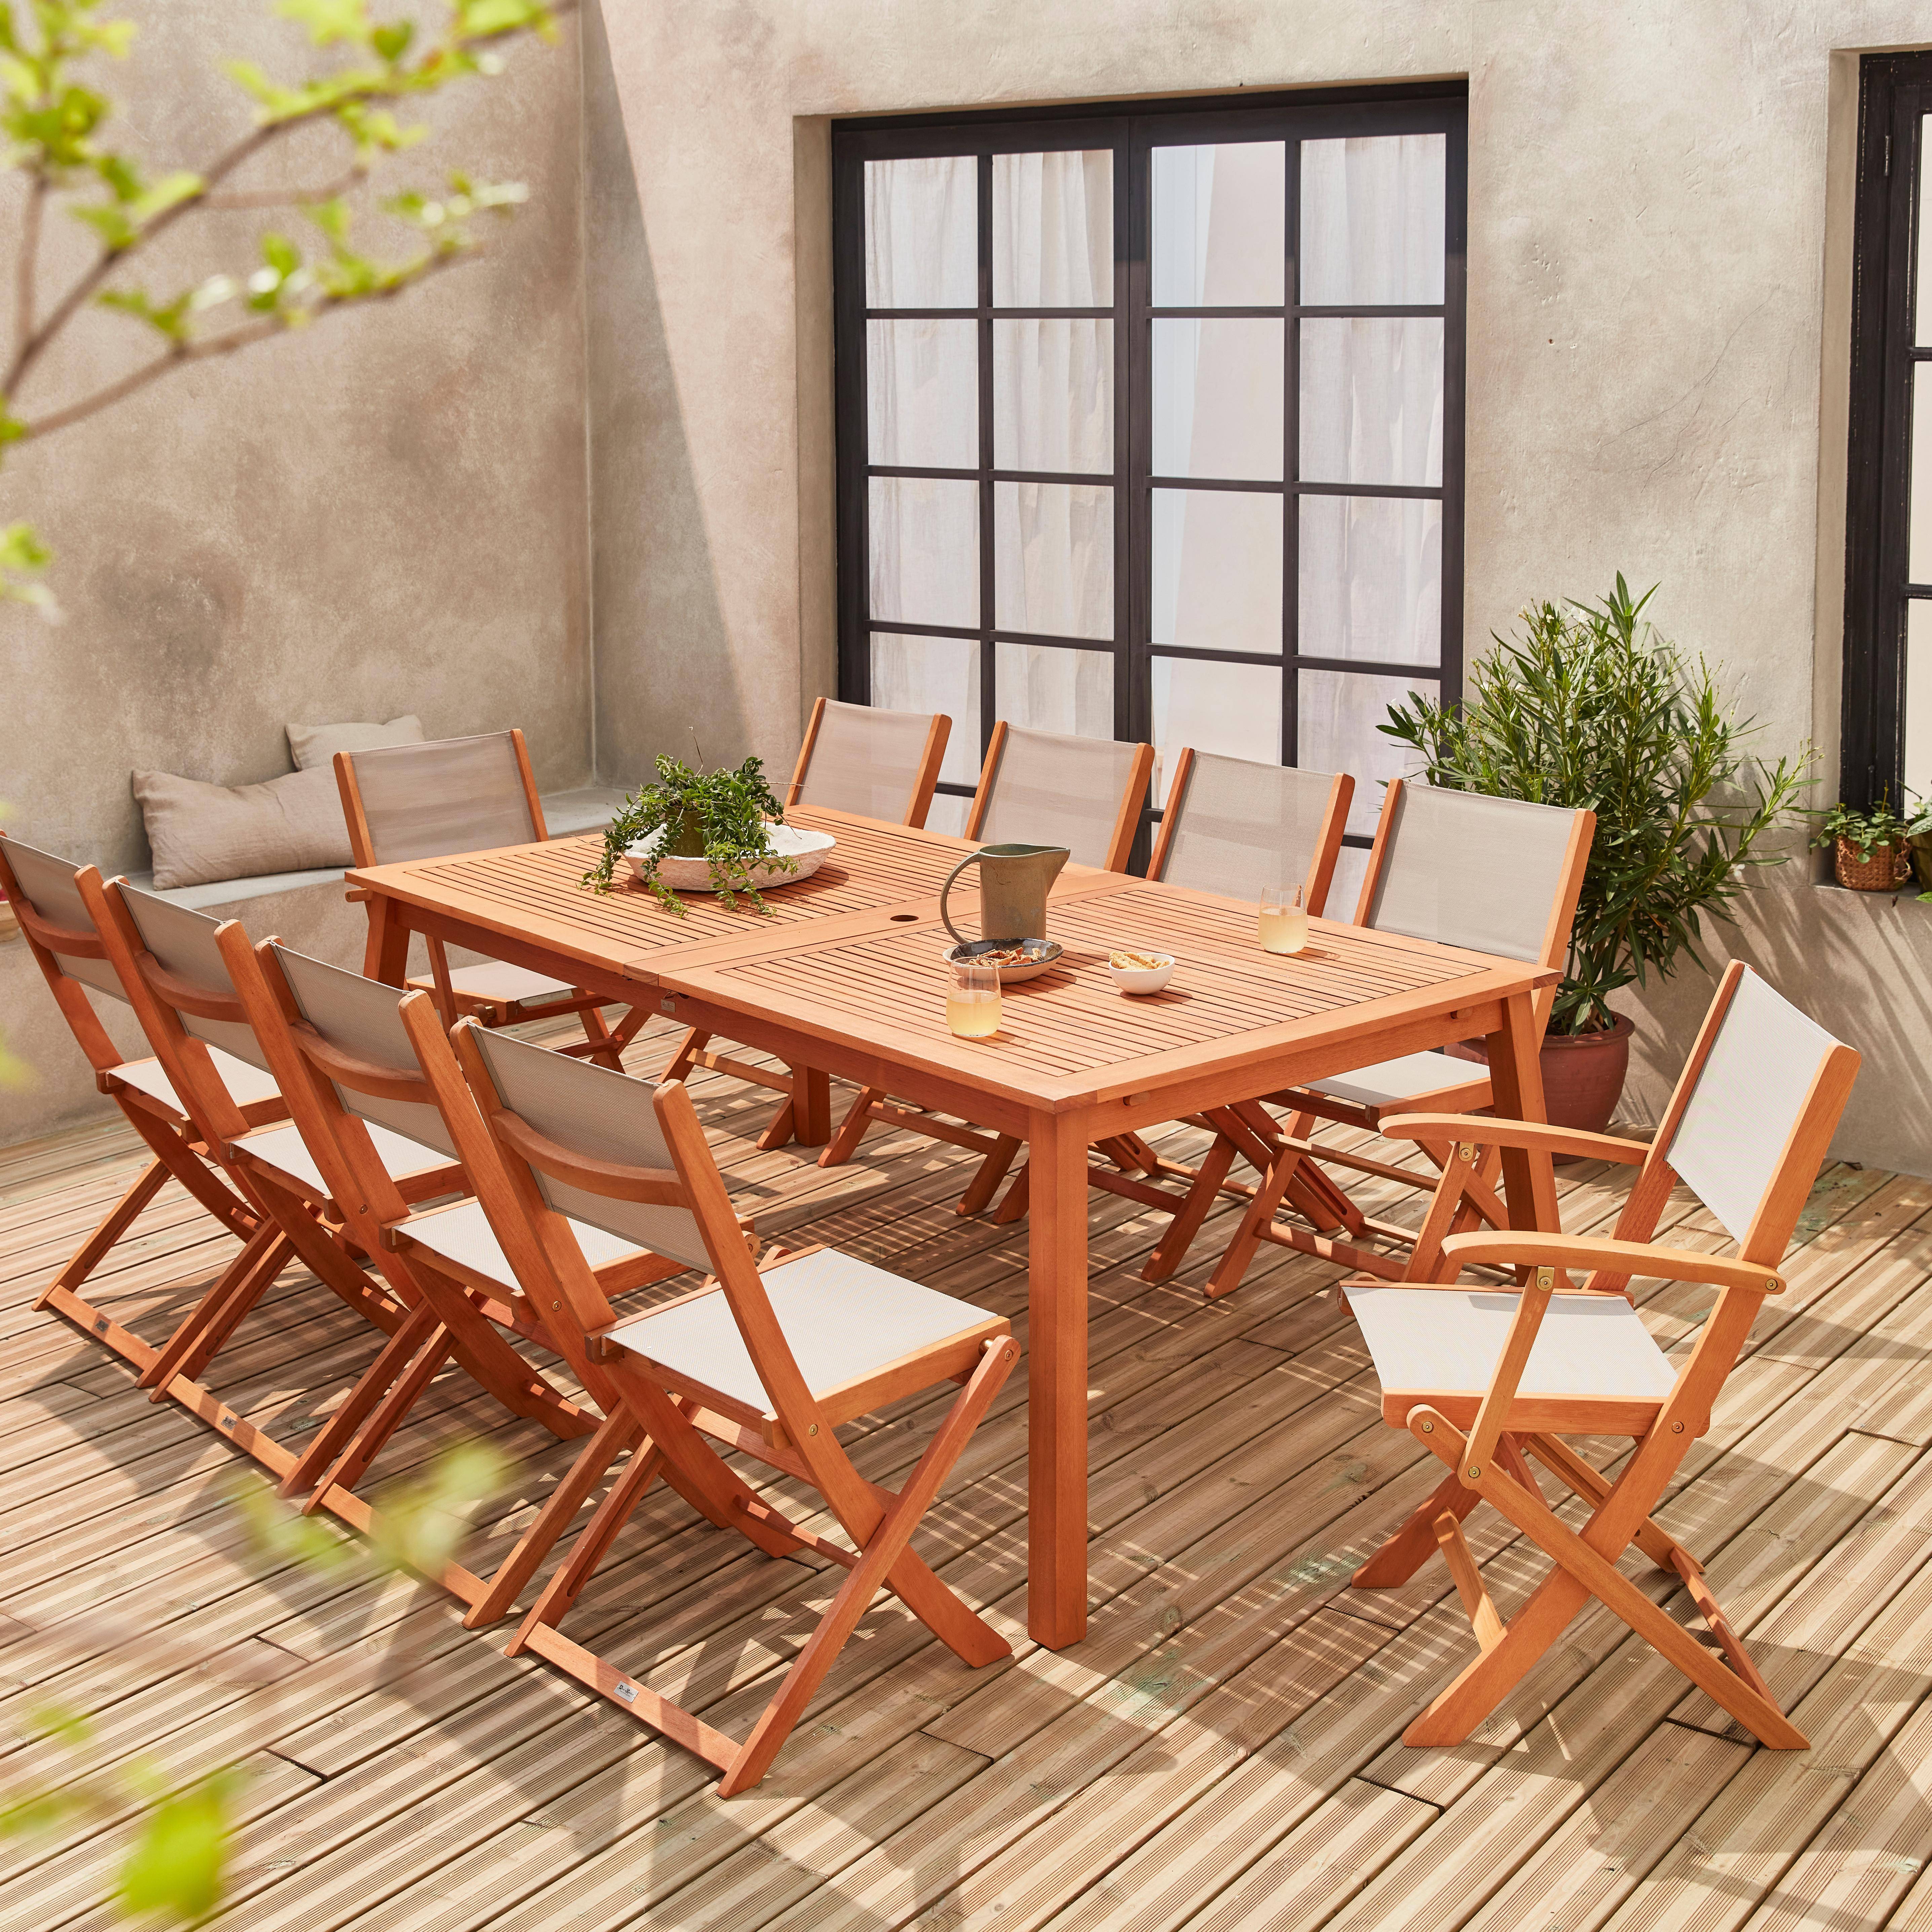 Ausziehbare Gartenmöbel aus Holz - Almeria Tisch 200/250/300cm mit 2 Verlängerungen, 2 Sesseln und 8 Stühlen, aus geöltem FSC Eukalyptusholz und taupgrau Textilene,sweeek,Photo2